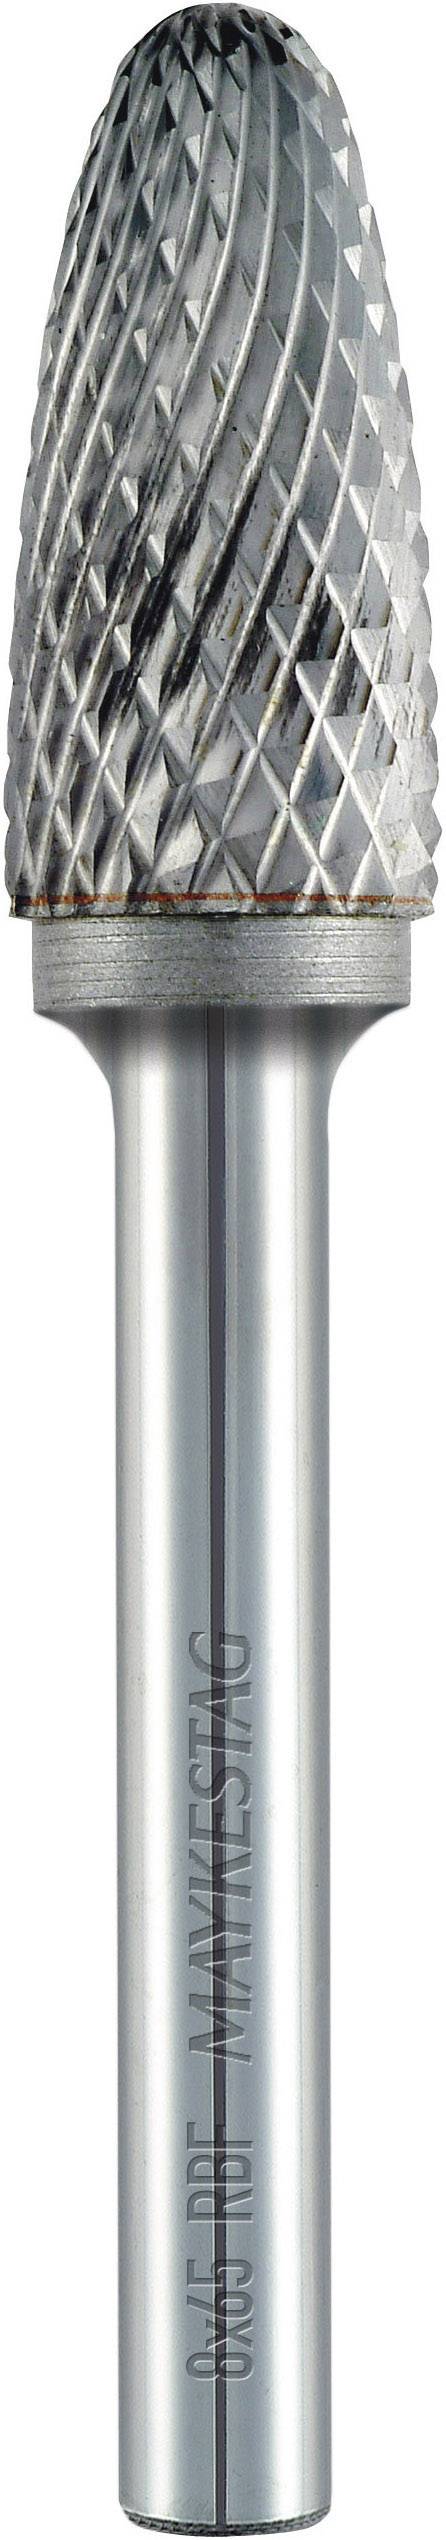 ALPEN Frässtift 6 mm Form F Rundbogen (RBF) Alpen 788606106100 Hartmetall Schaft-Ø 6 mm